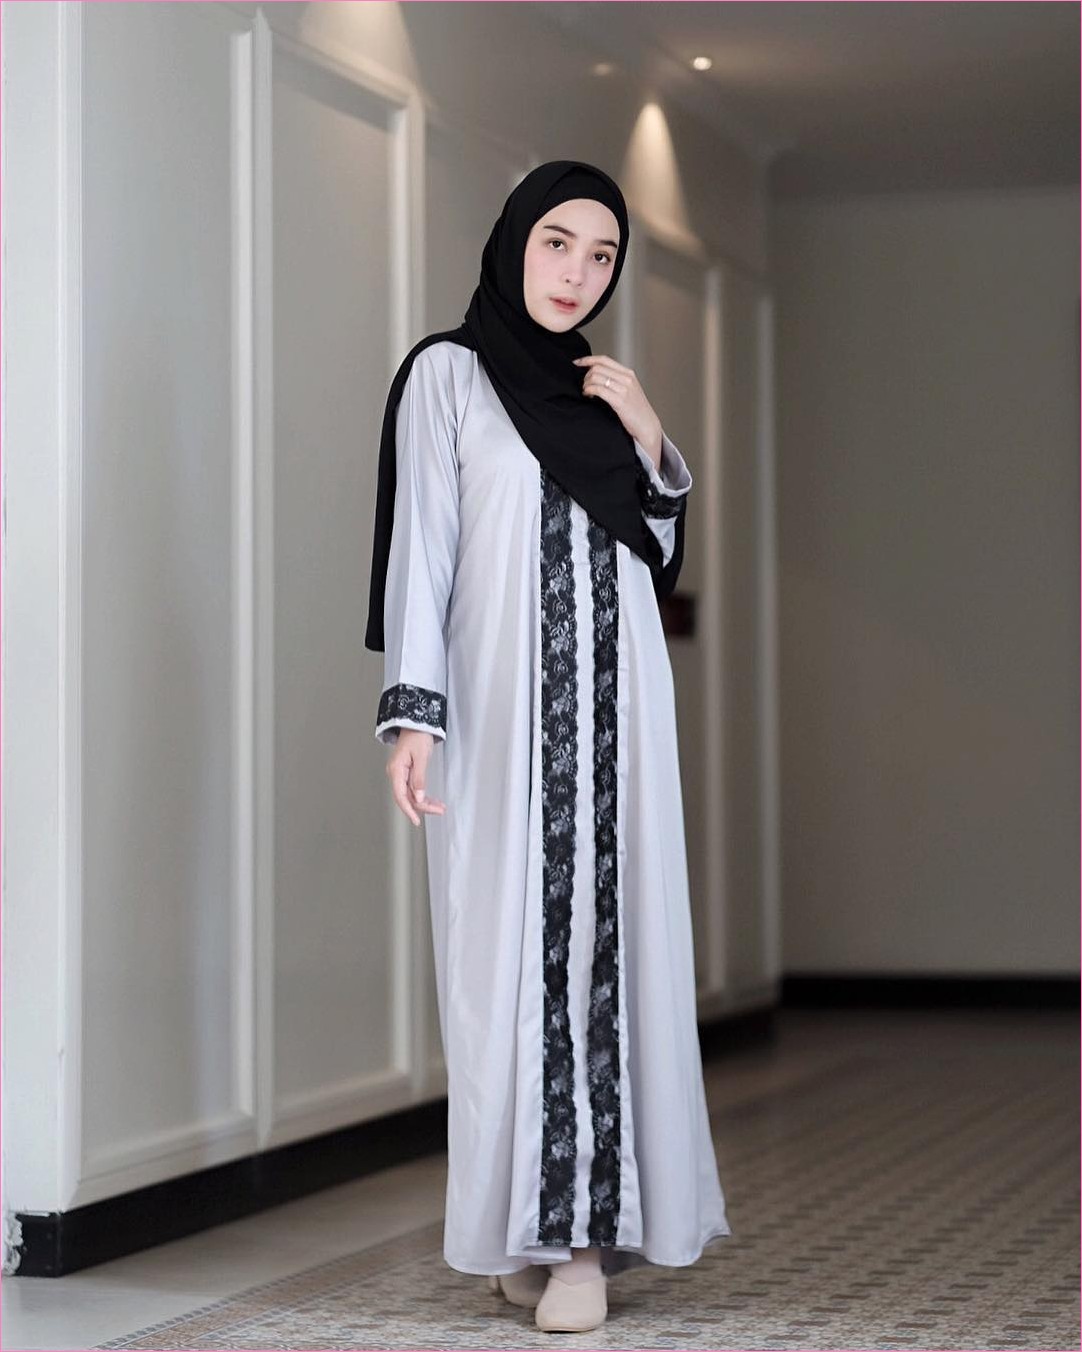 Outfit Baju Gamis Berhijab Ala Selebgram 2019